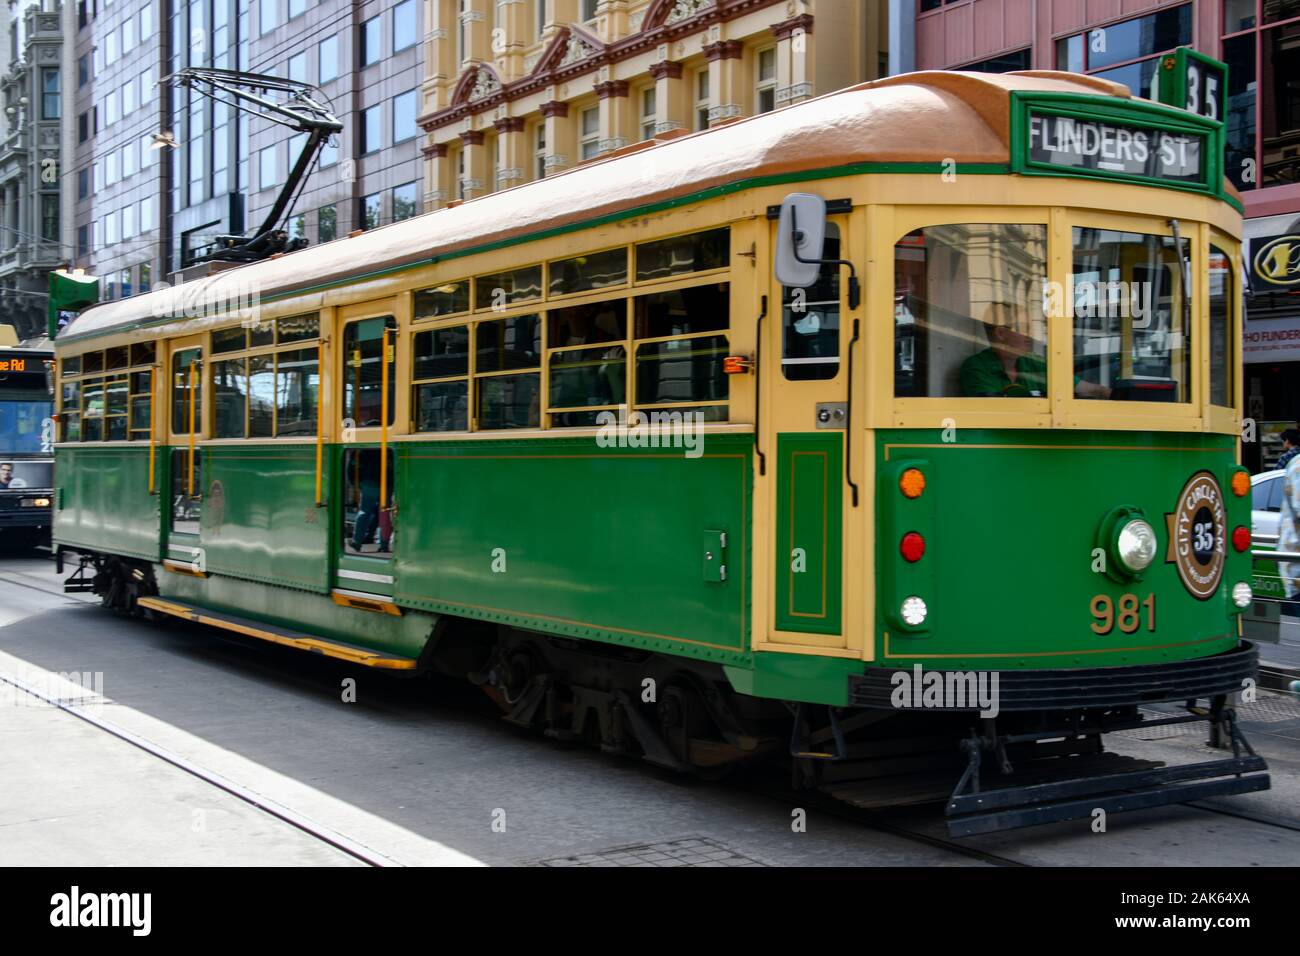 Melbourne célèbre tramway électrique vert et crème W-class 981 no 35 de la ville en bus hop on hop off à la Flinders Street Banque D'Images